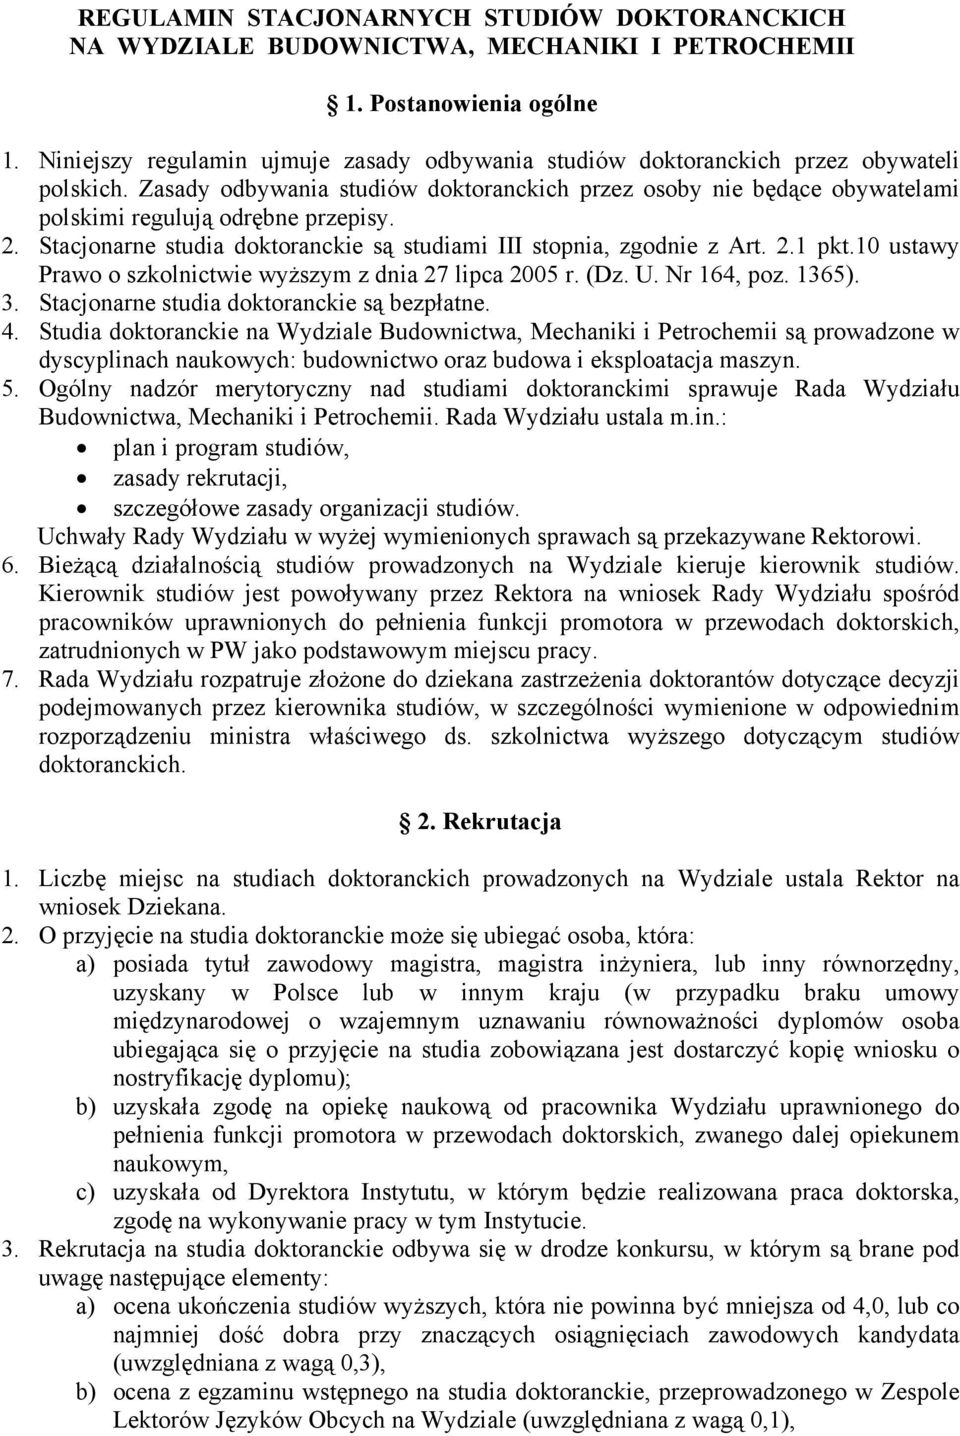 Zasady odbywania studiów doktoranckich przez osoby nie będące obywatelami polskimi regulują odrębne przepisy. 2. Stacjonarne studia doktoranckie są studiami III stopnia, zgodnie z Art. 2.1 pkt.